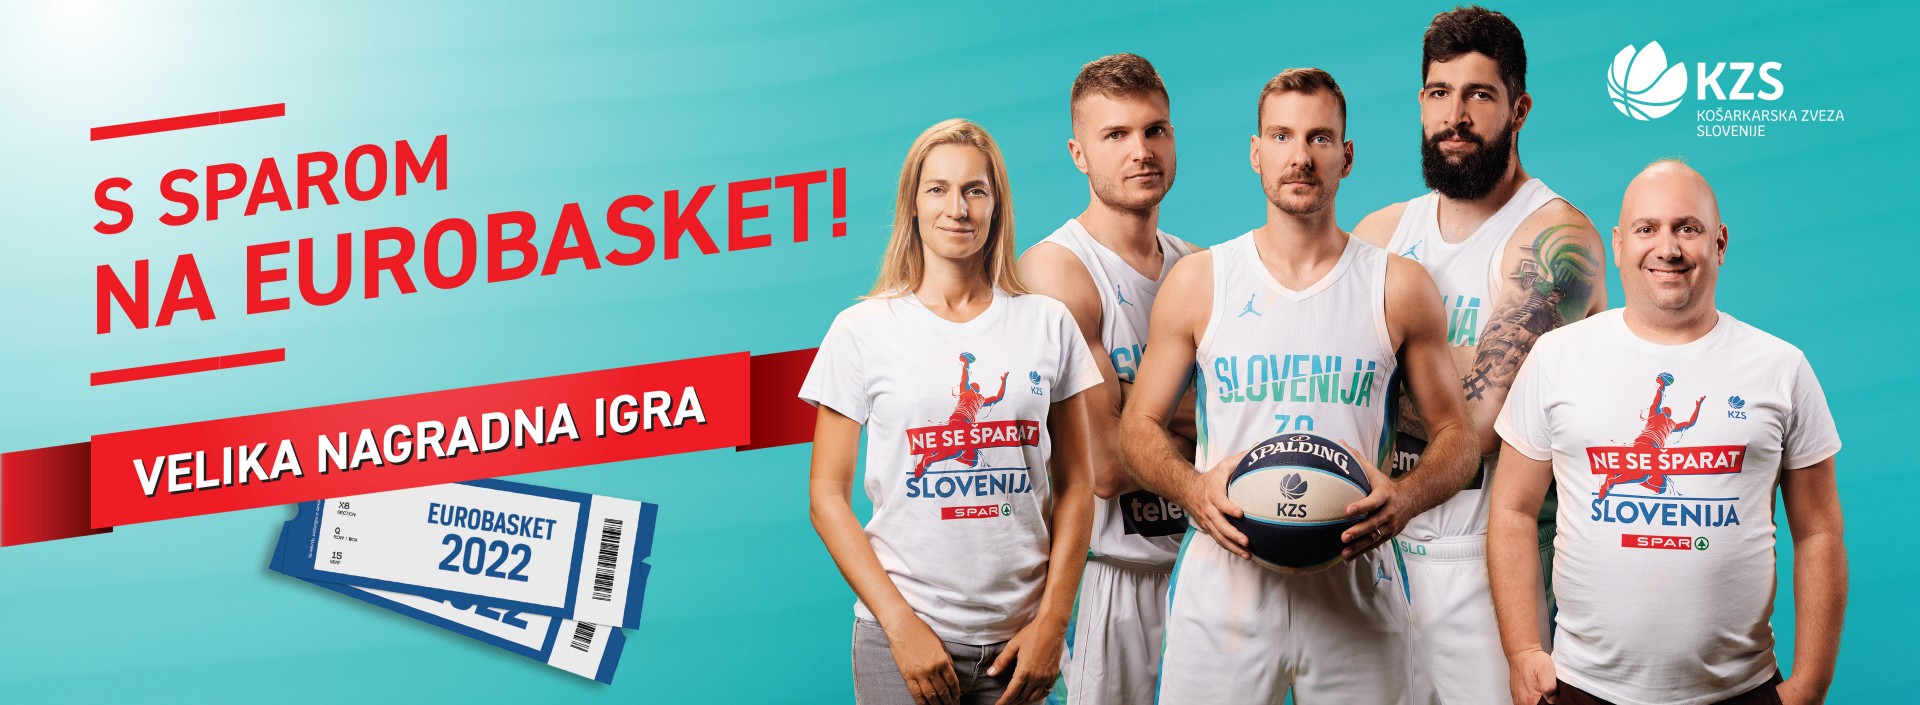 S SPAROM NA EUROPASKET 24 navijačev peljemo na Evropsko prvenstvo v košarki!